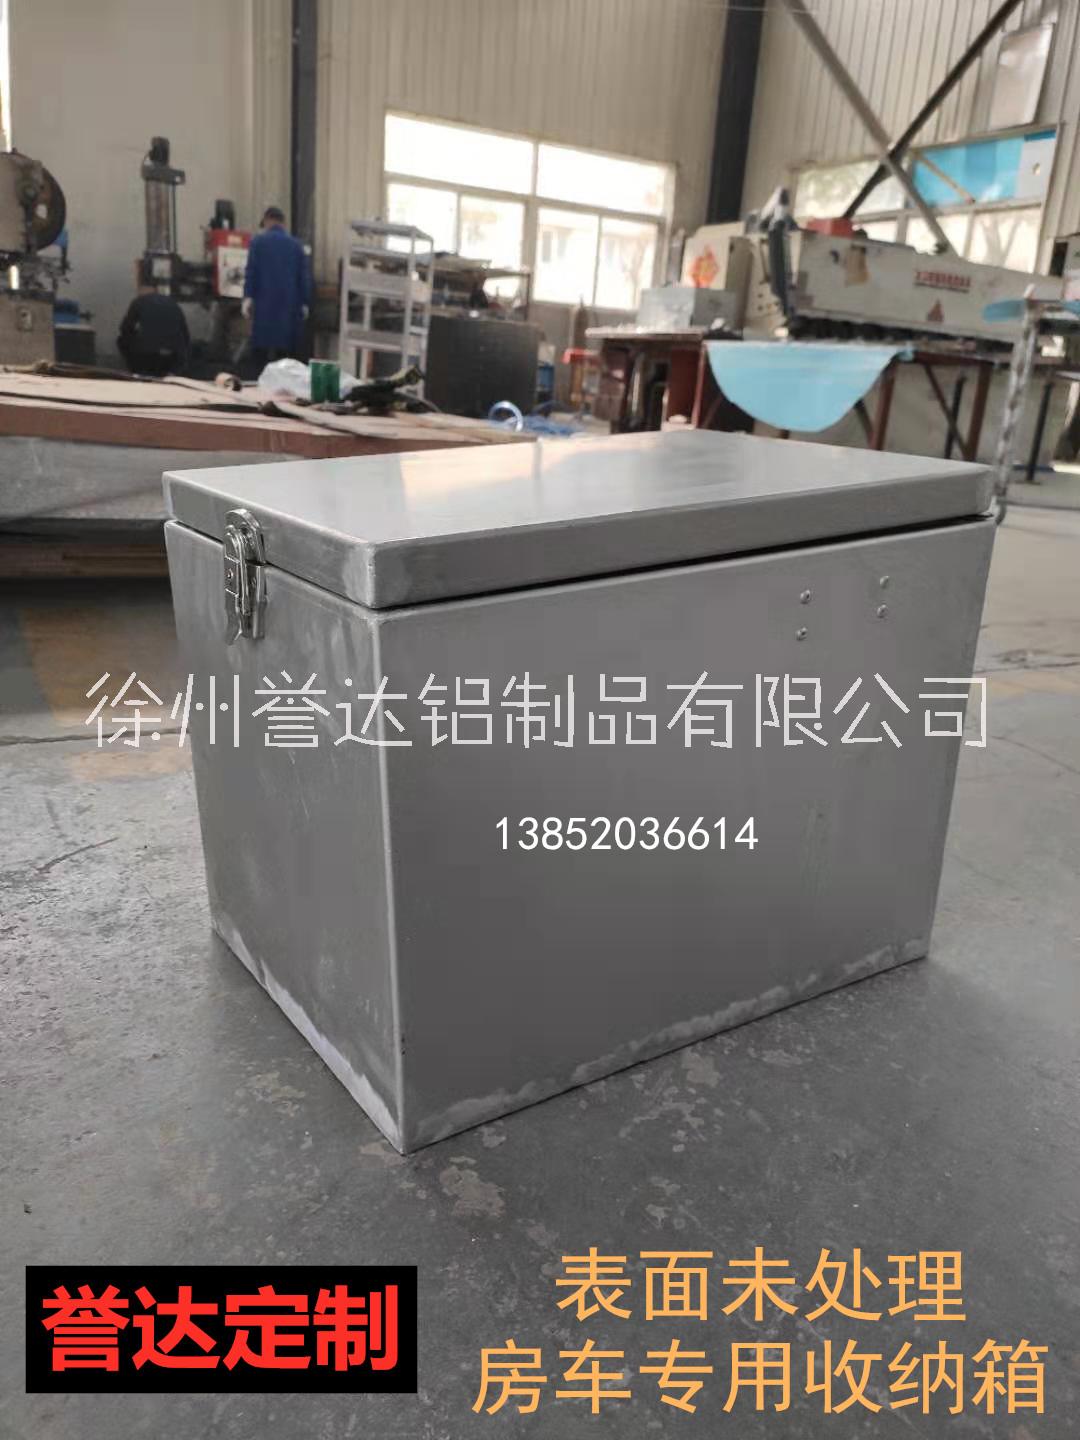 铝合金收纳箱厂家合金铝板定制铝箱铝合金收纳柜工具箱直销商支持任意定制图片